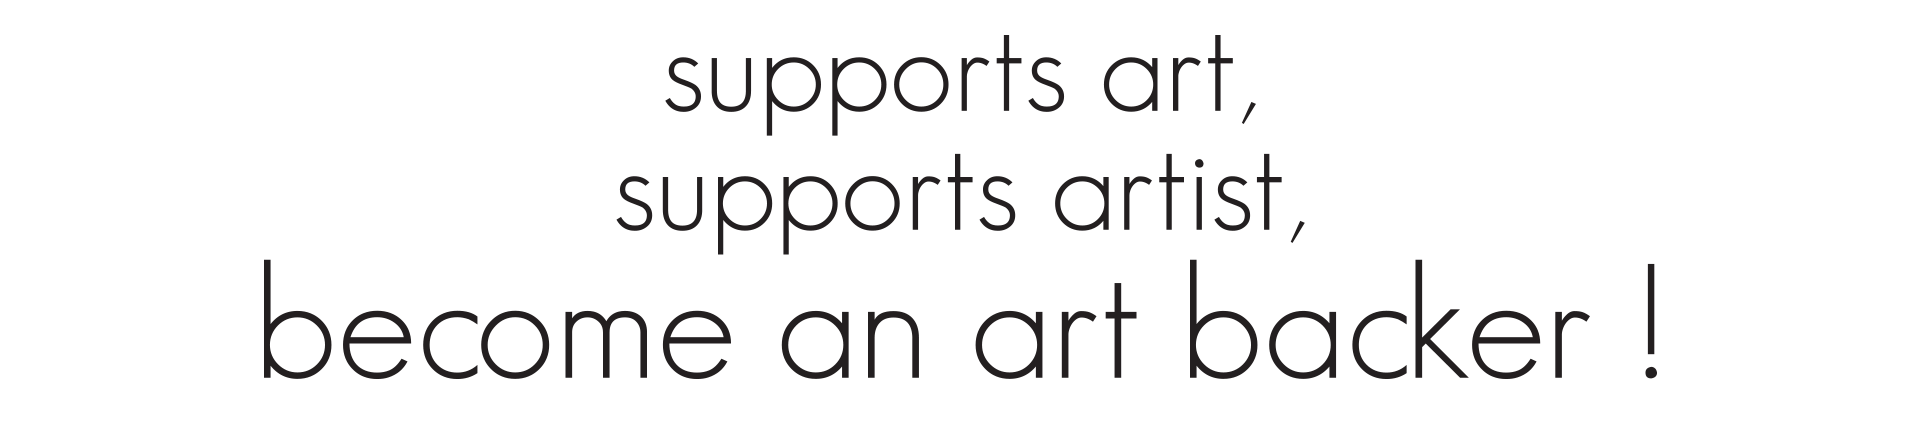 support art support artist become an art backer